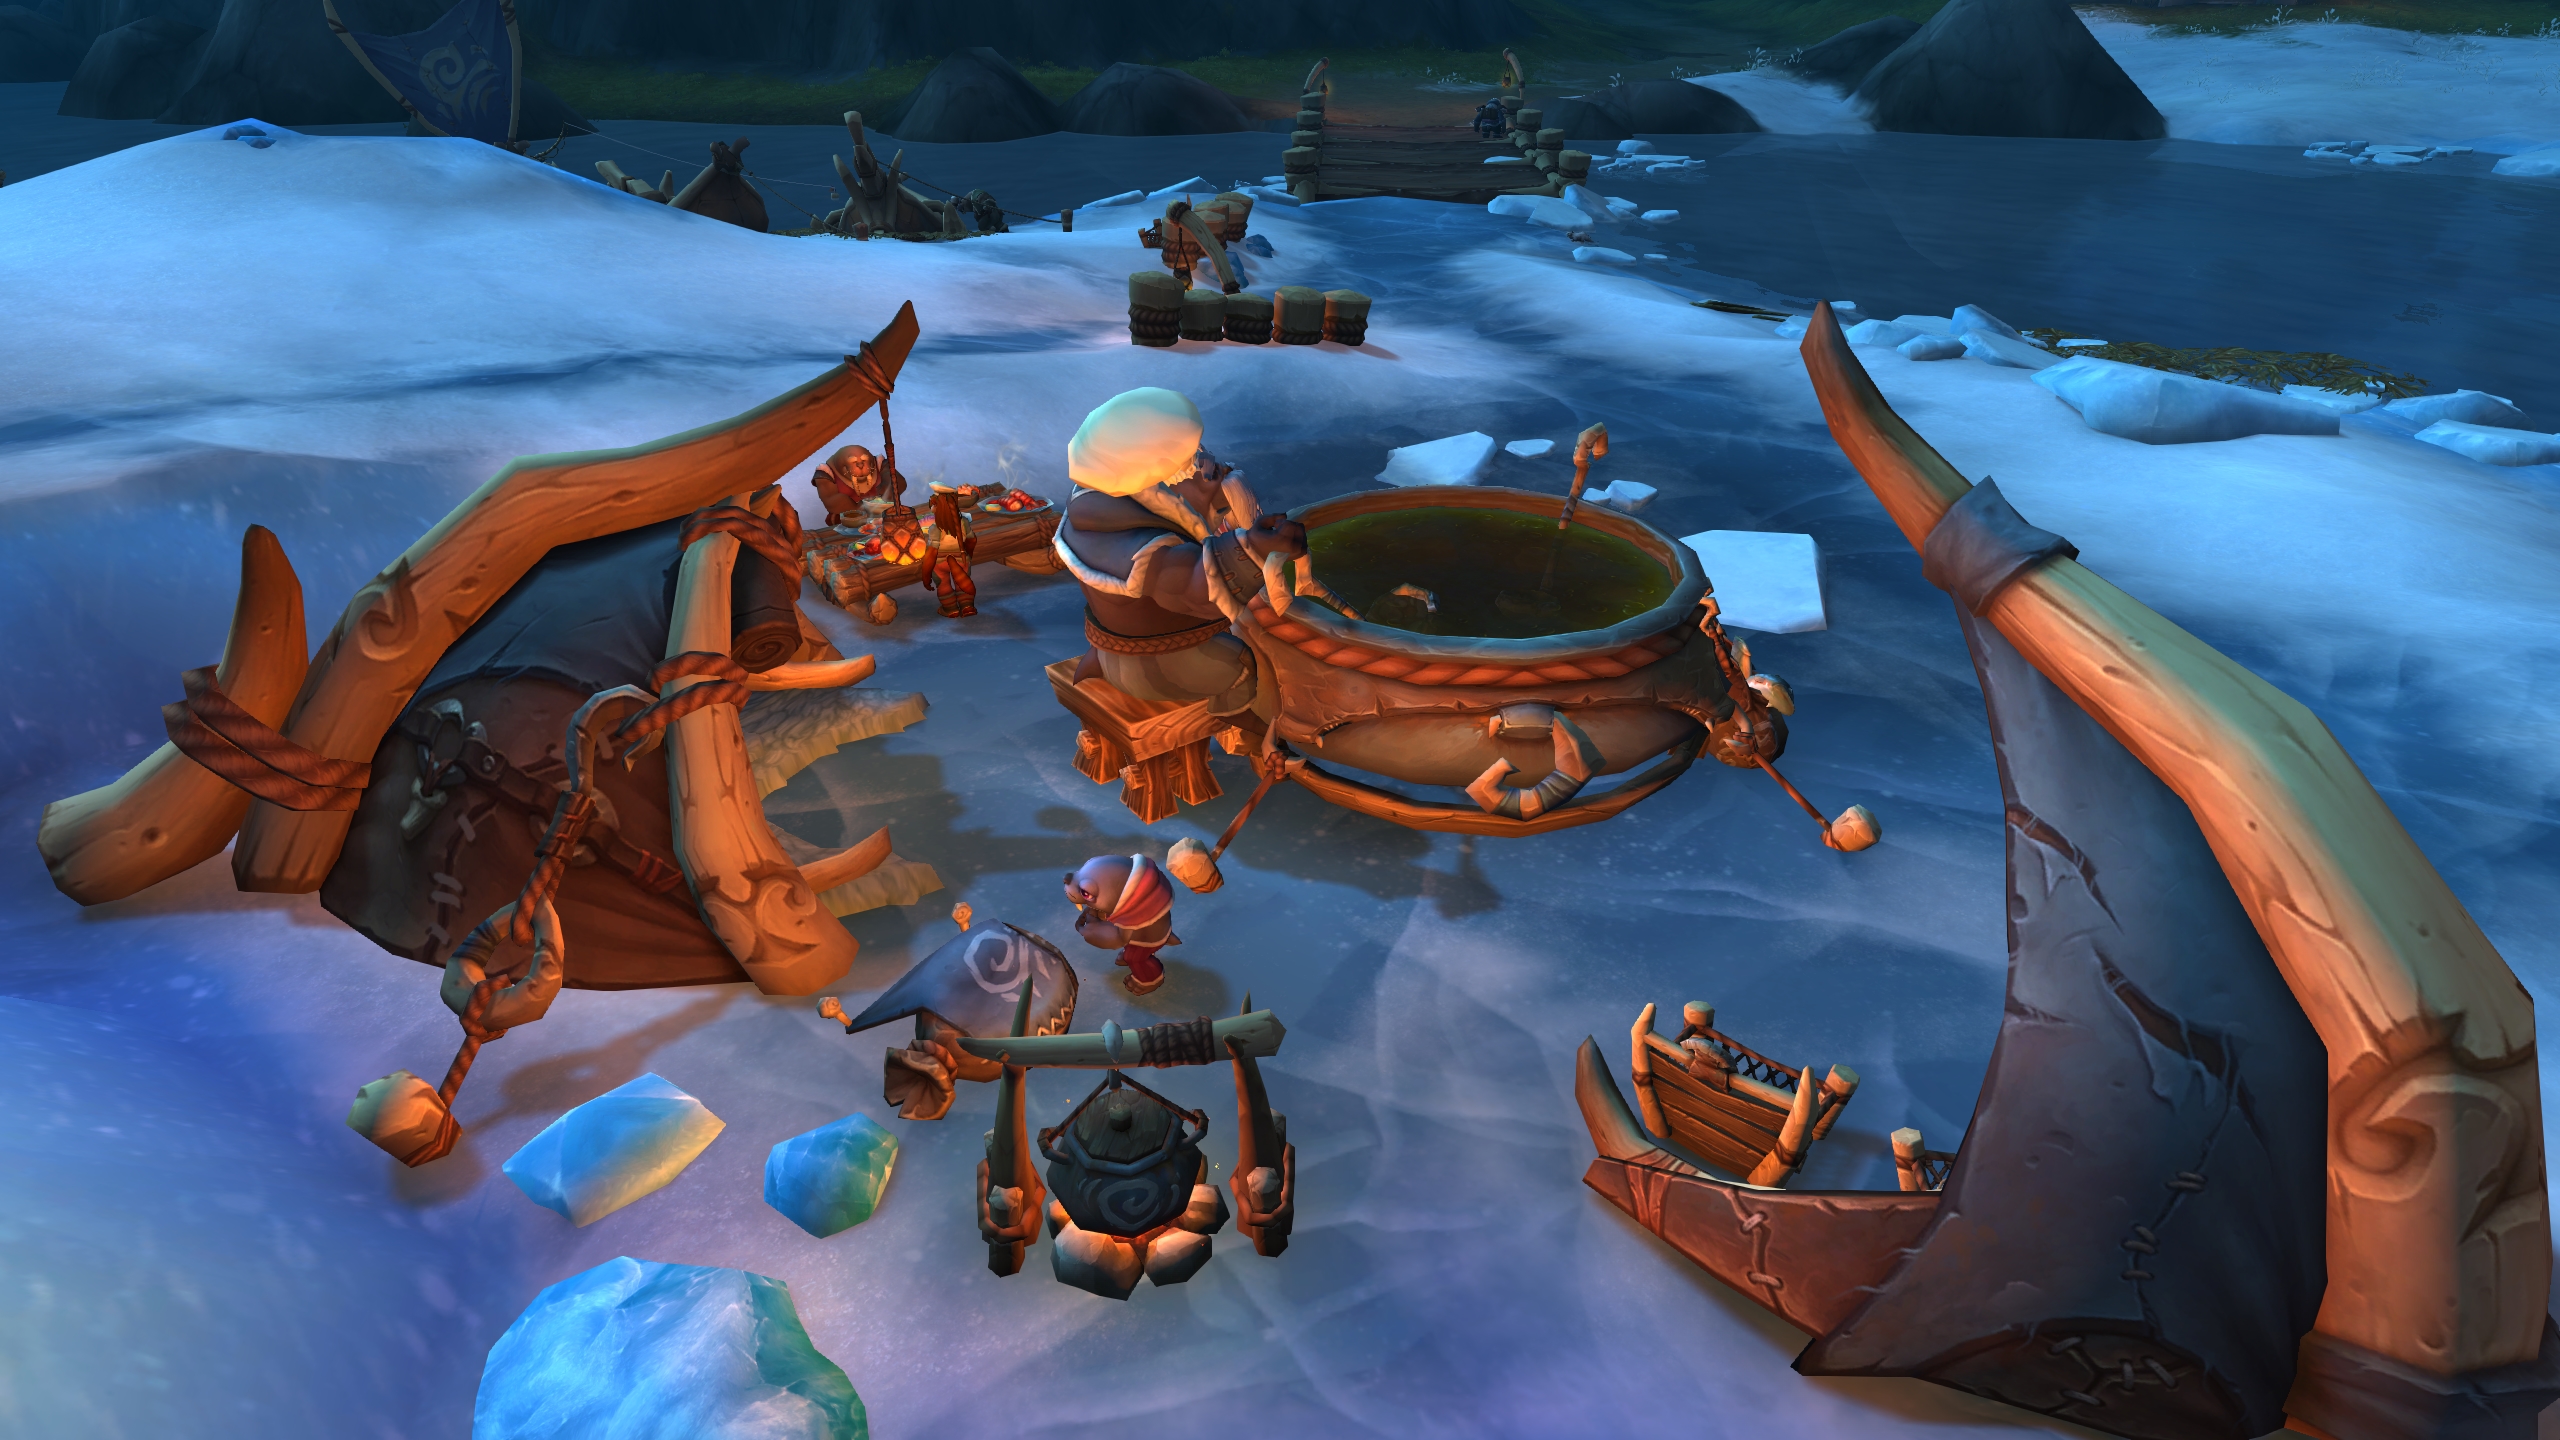 Stock Fish - NPC - World of Warcraft